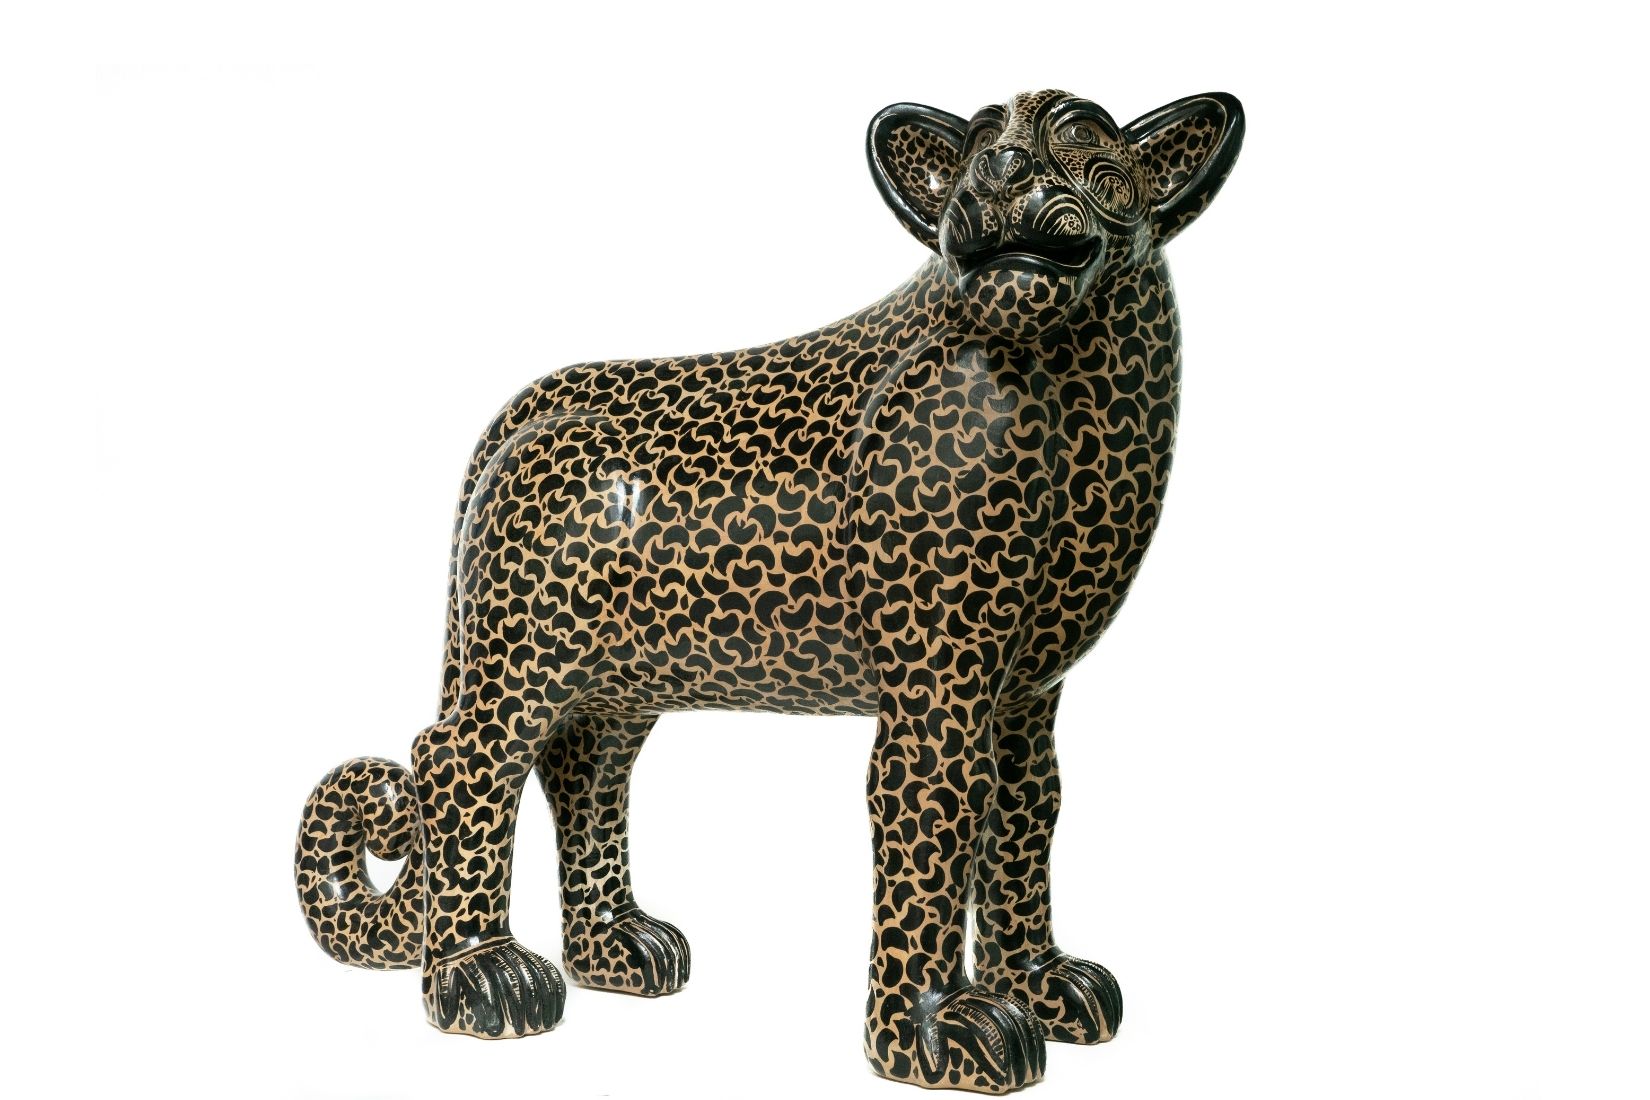 Jaguar en barro modelado, engobado y bruñido. Artesano Alberto Bautista Gómez. Amatenango del Valle, Chis. 2001. Col. Fomento Cultural Banamex. (Foto: EKV).